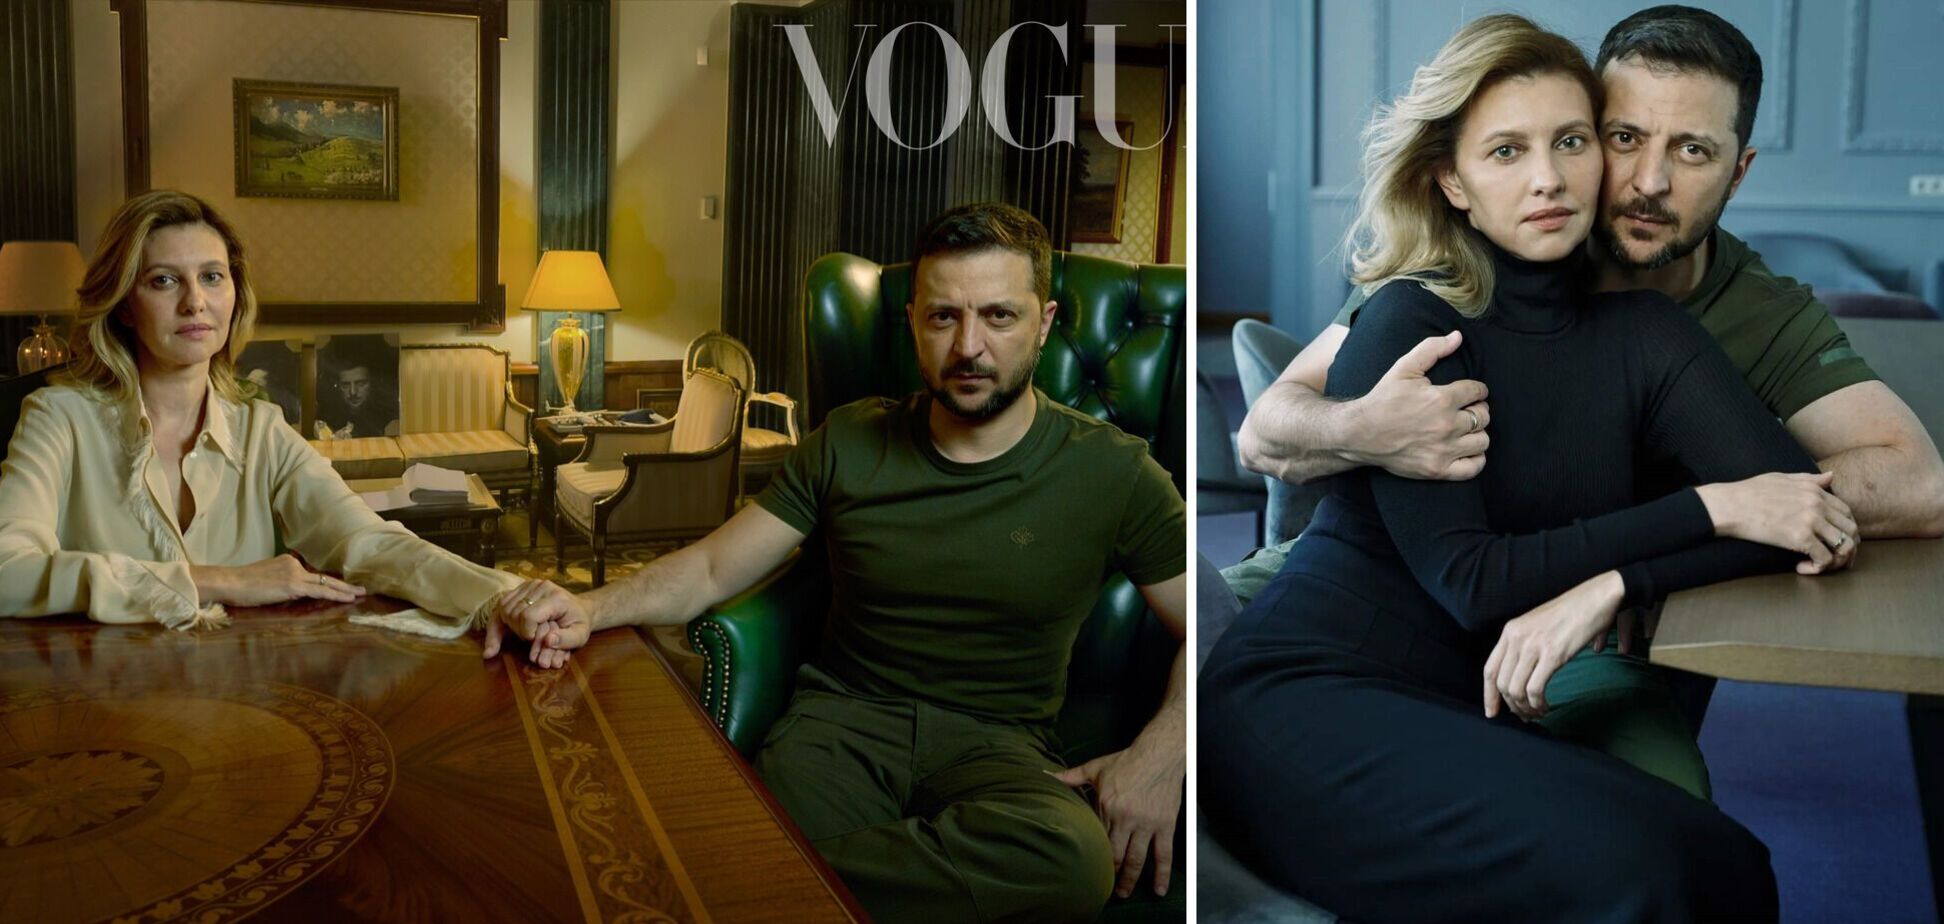 Захід усе більше втомлюється від війни, тому фотосесія Зеленського у Vogue дуже вчасна